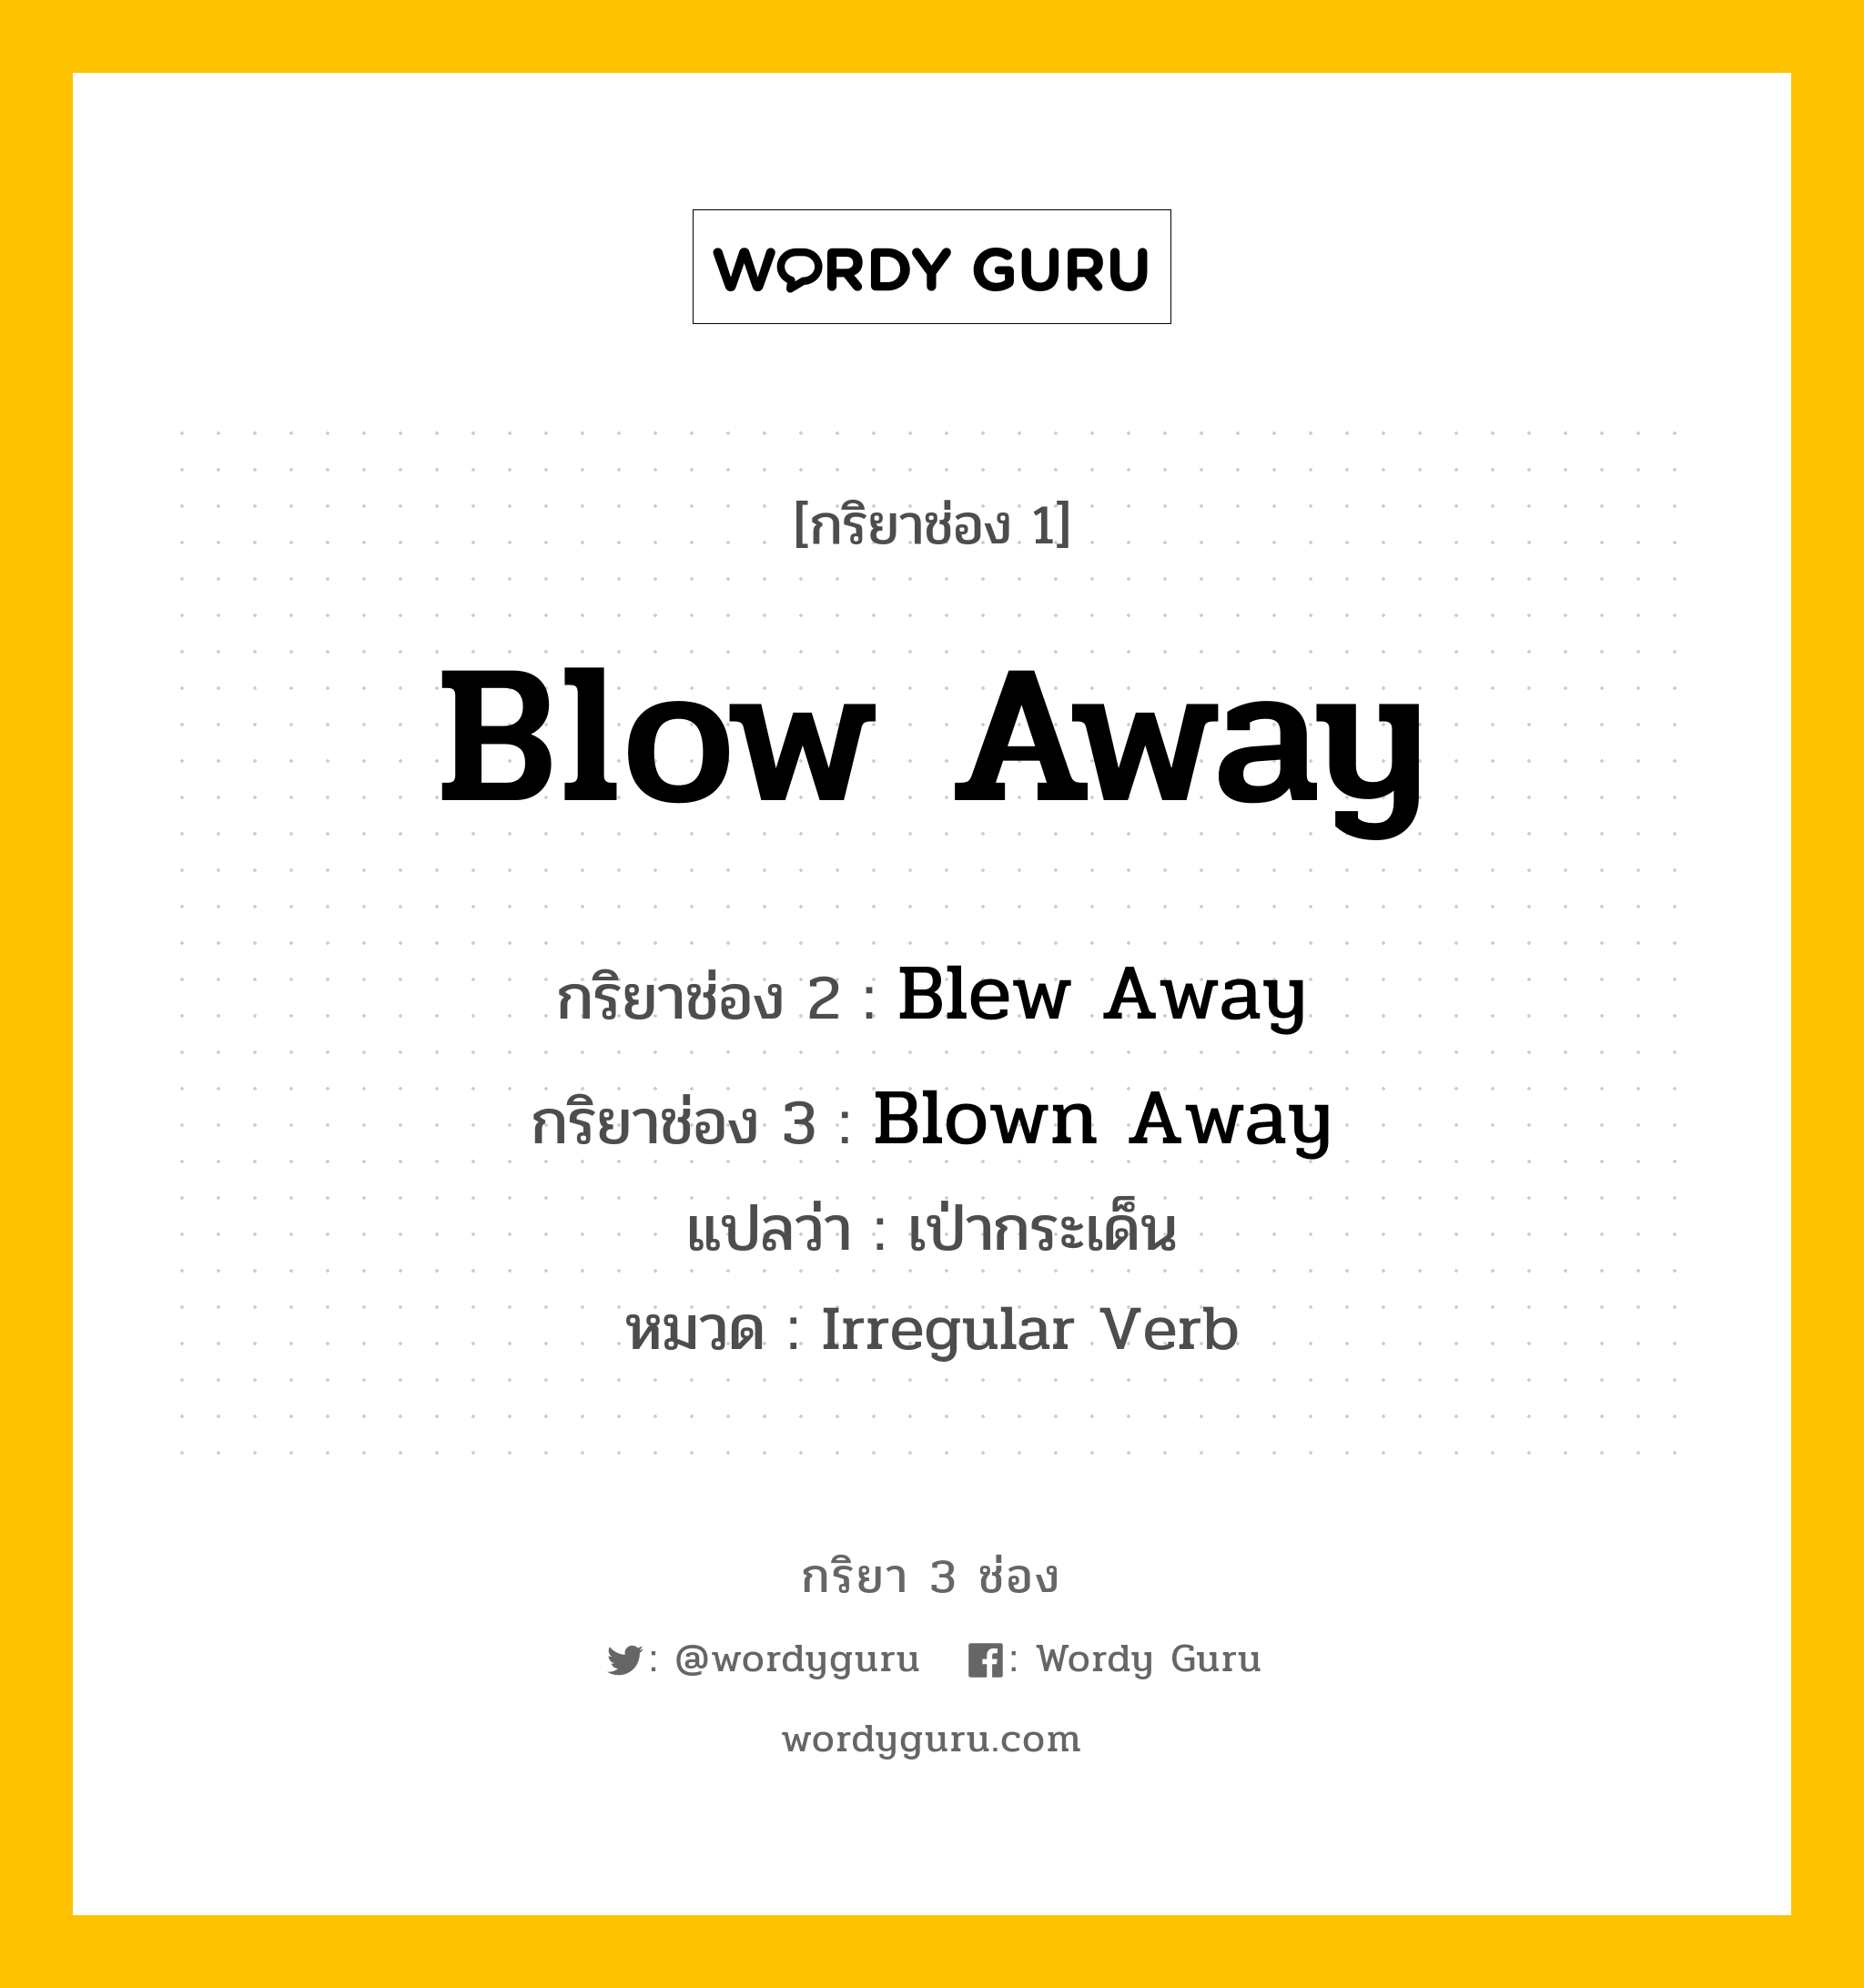 Blow Away มีกริยา 3 ช่องอะไรบ้าง? คำศัพท์ในกลุ่มประเภท Irregular Verb, กริยาช่อง 1 Blow Away กริยาช่อง 2 Blew Away กริยาช่อง 3 Blown Away แปลว่า เป่ากระเด็น หมวด Irregular Verb หมวด Irregular Verb